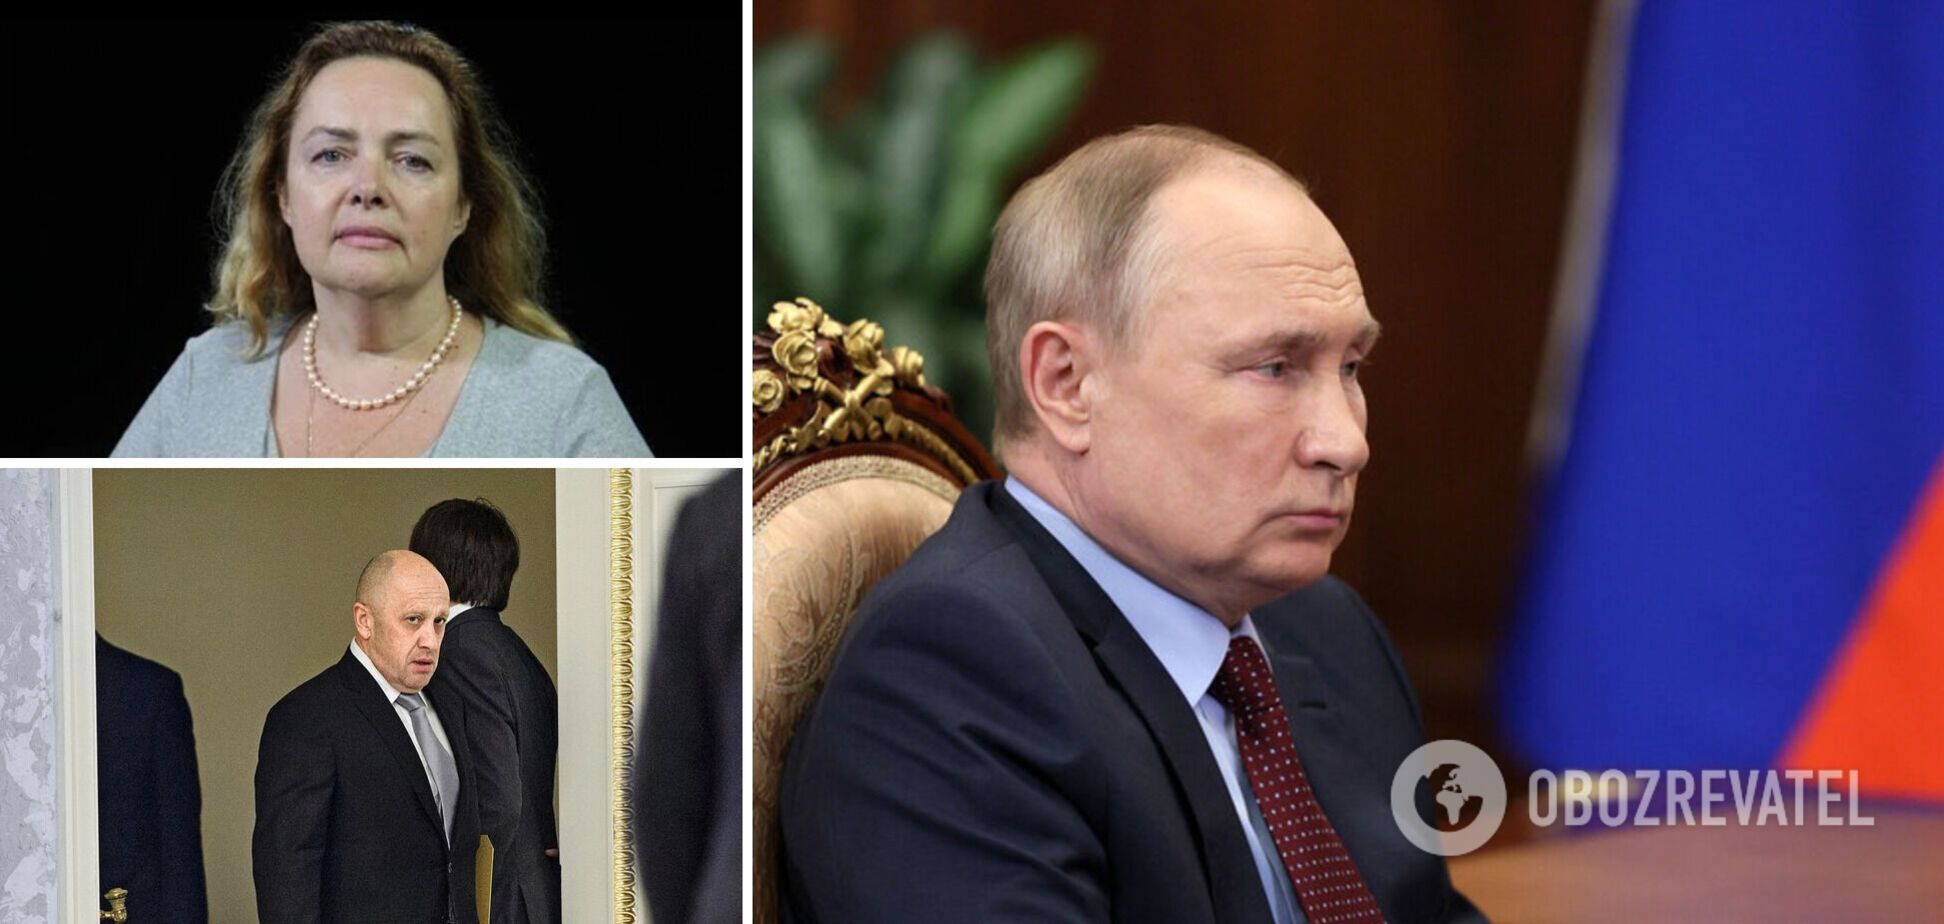 Курносова: Пригожин не будет воевать с Путиным, но может использовать вакуум власти в РФ. Интервью